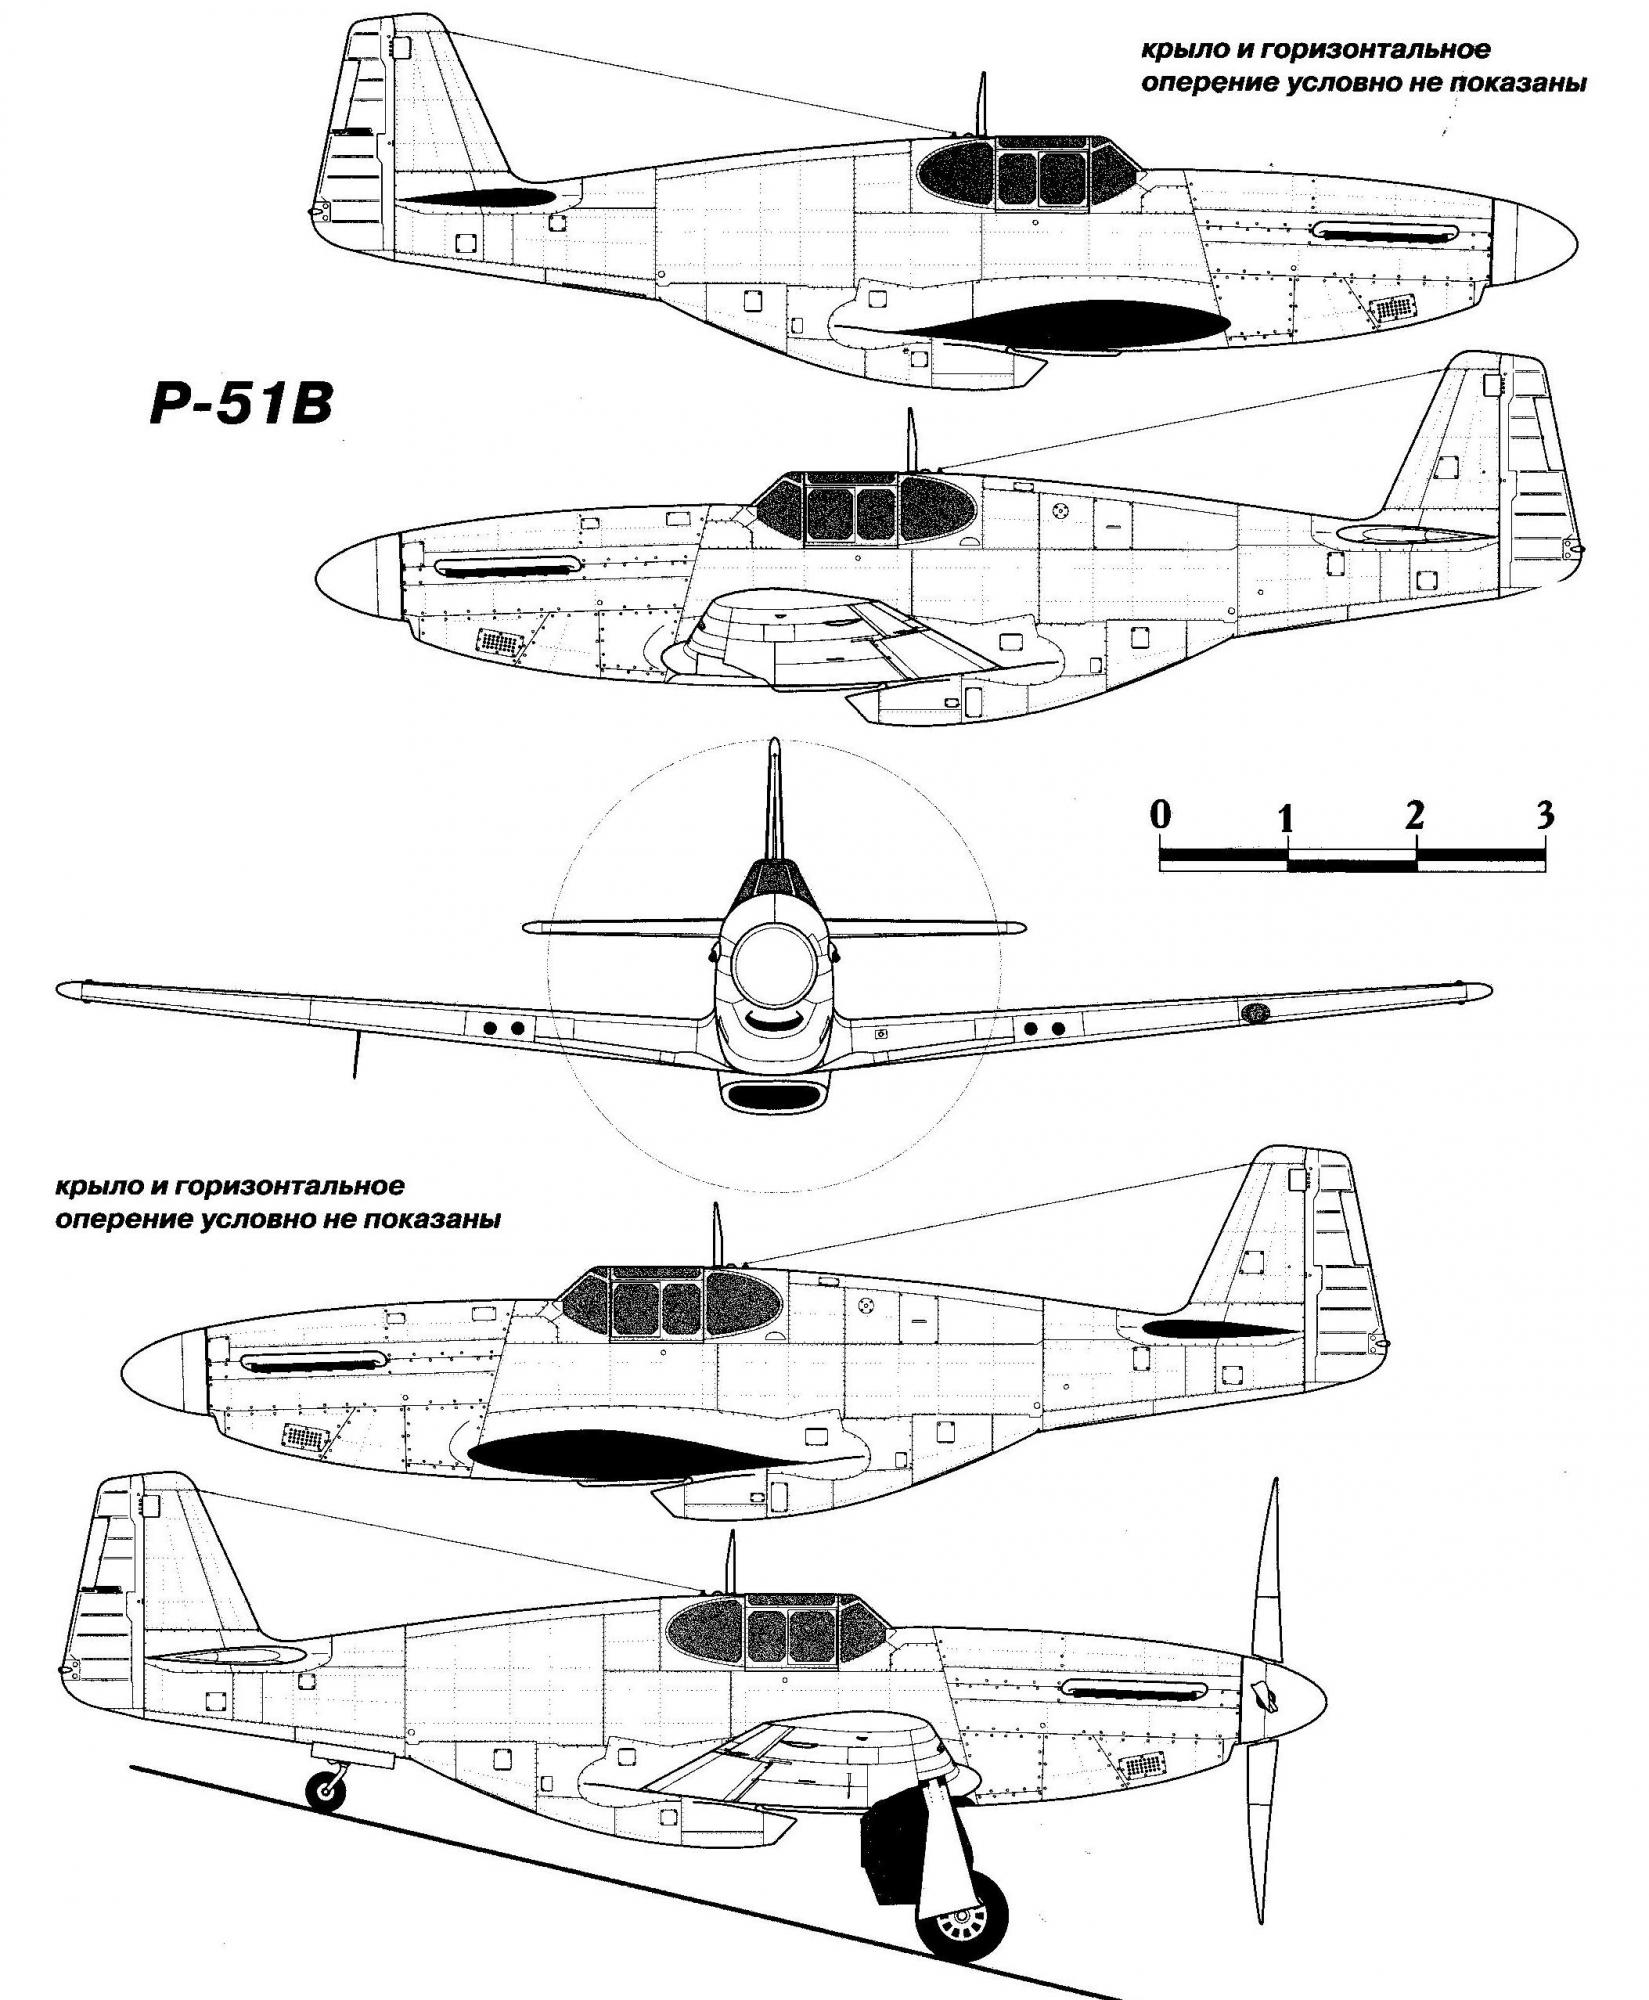 Испытано в Германии. Истребитель North American P-51